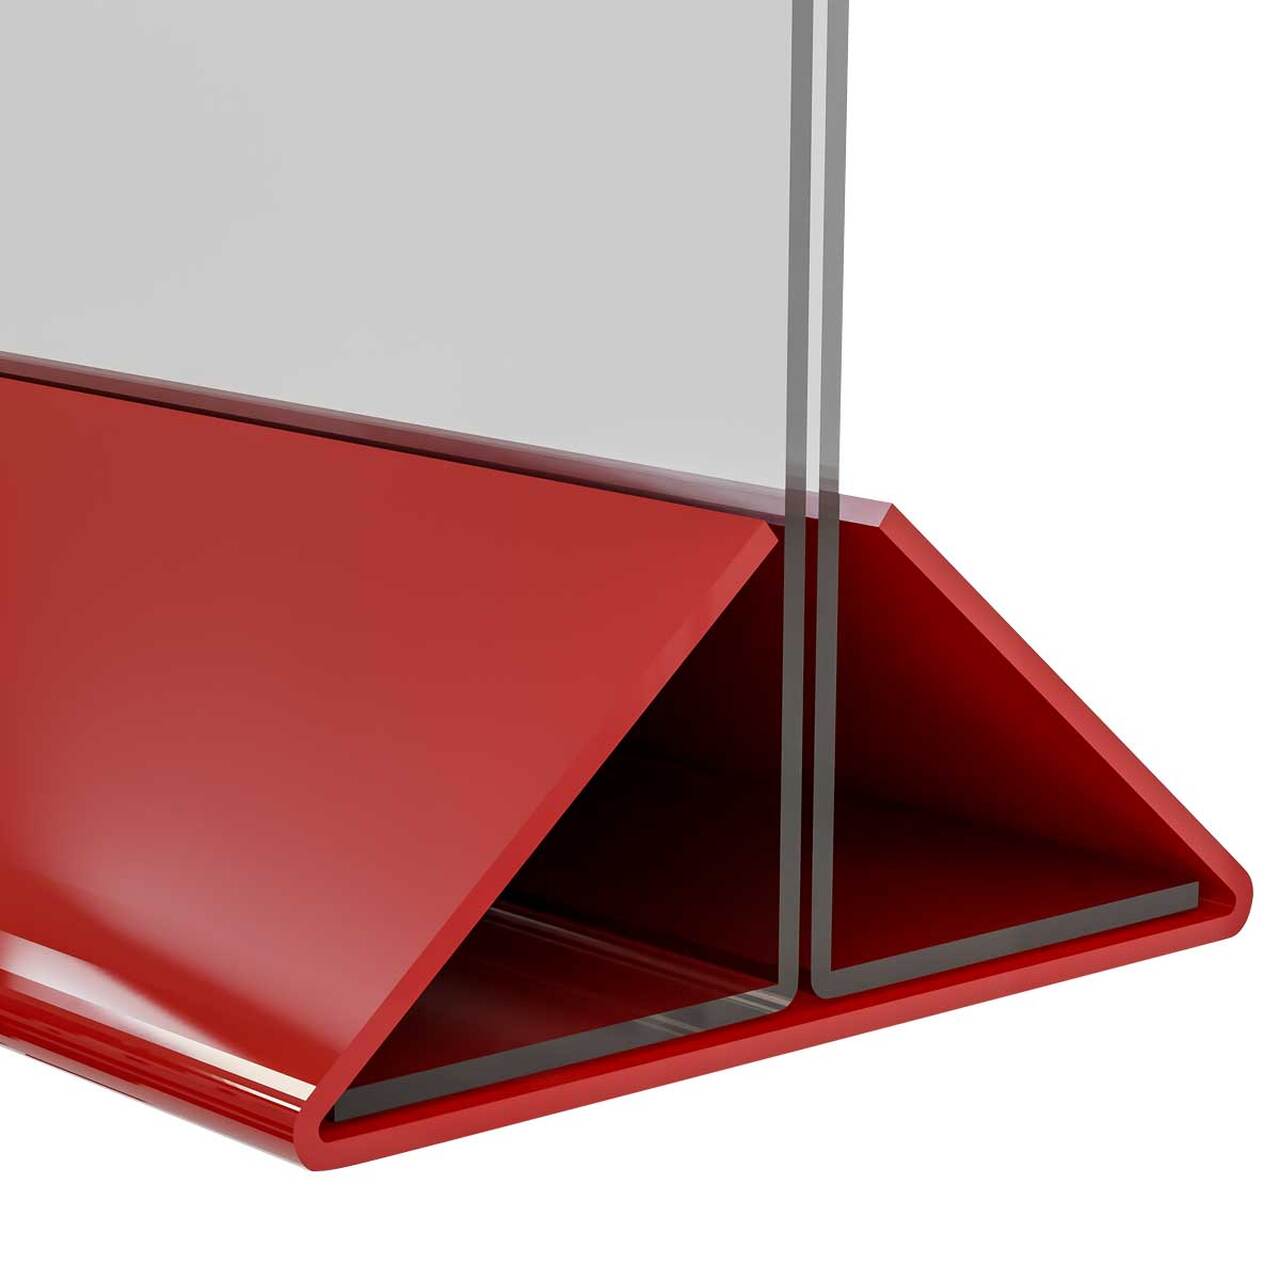 Menu Holder - Suport meniu din plexiglas cu bază roșie 100x210mm, Portrait, 2buc/set